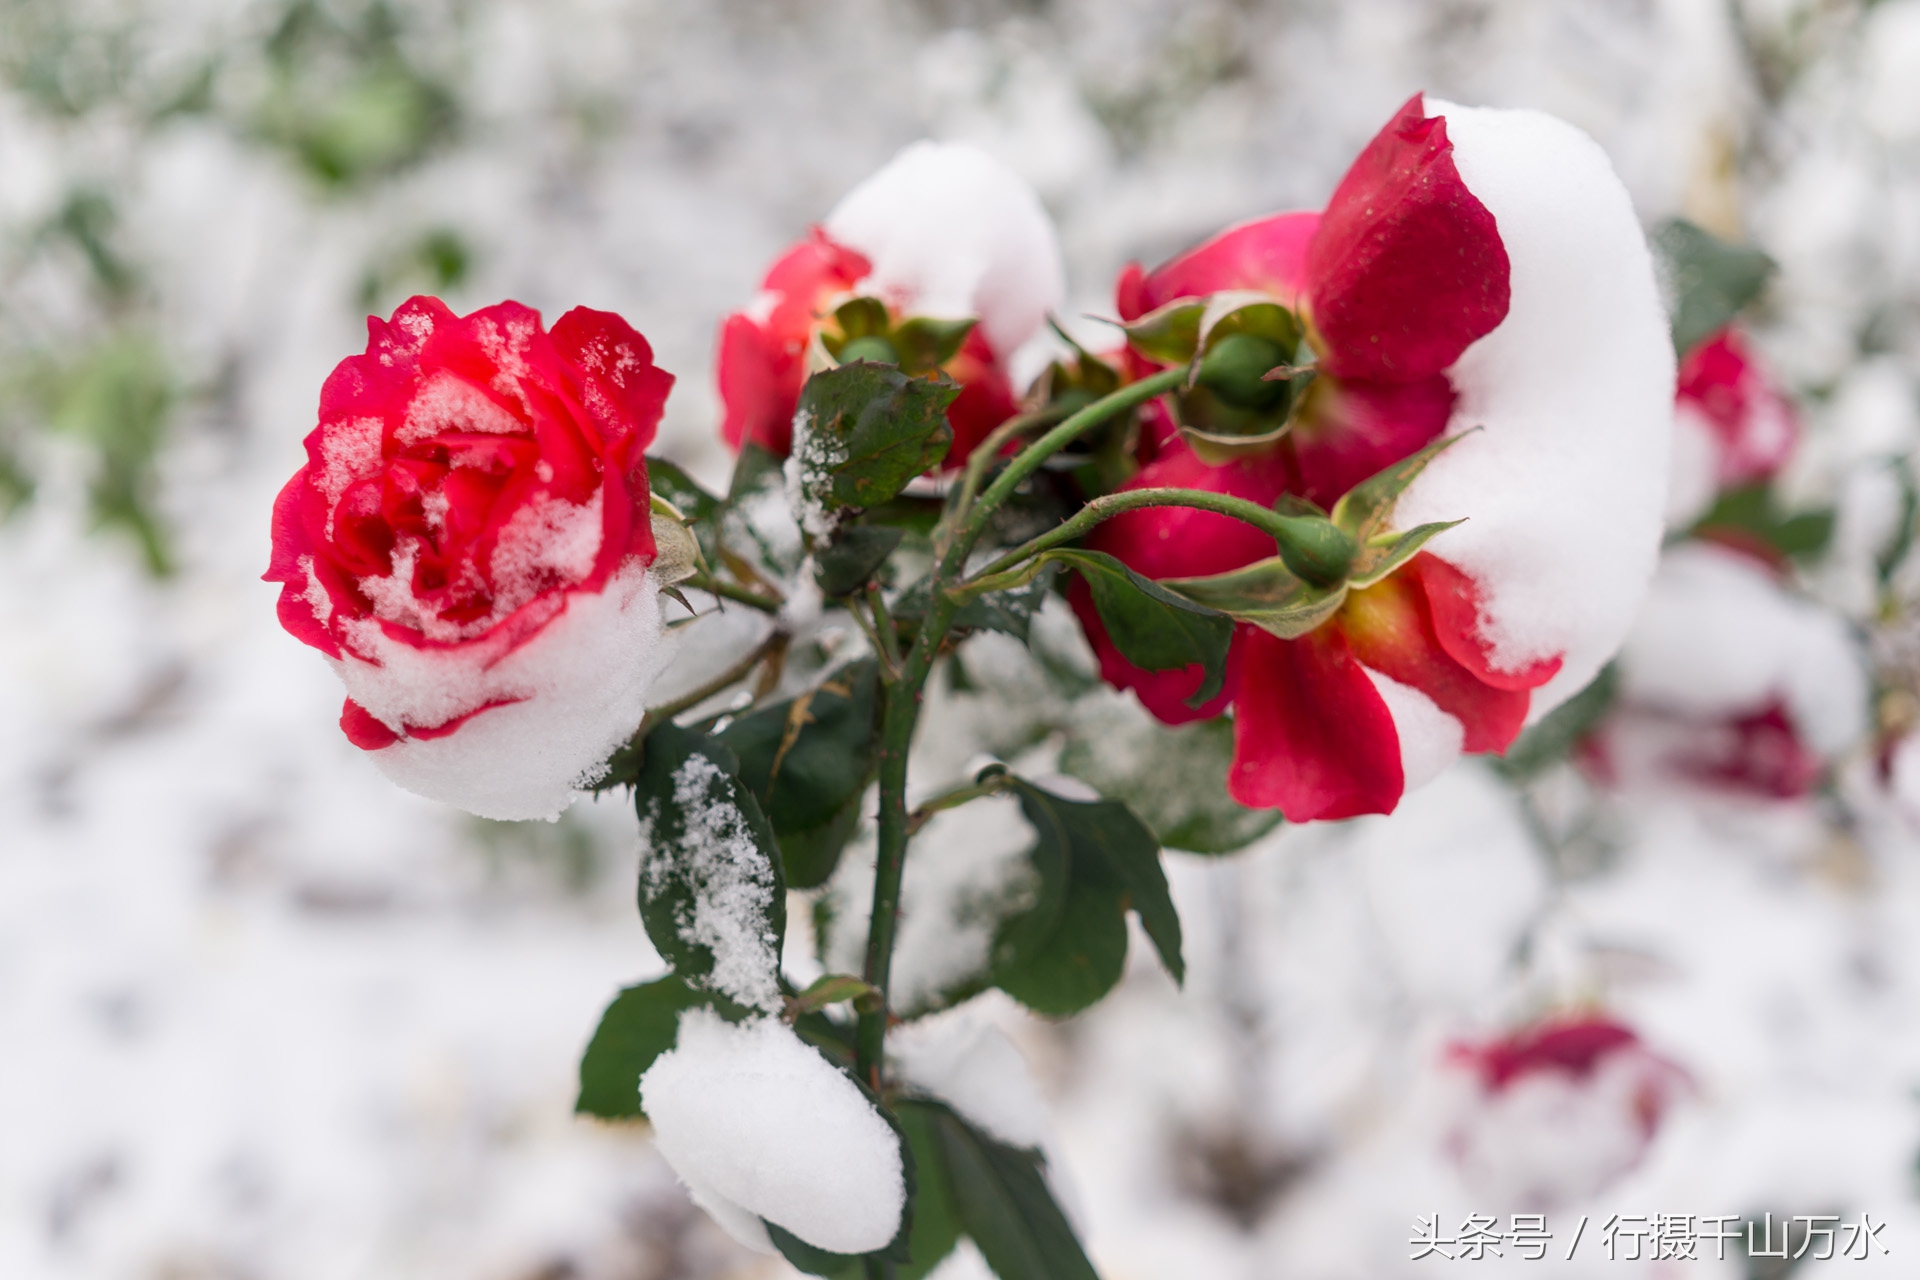 皑皑白雪中一点红,雪中的月季花,美爆了!